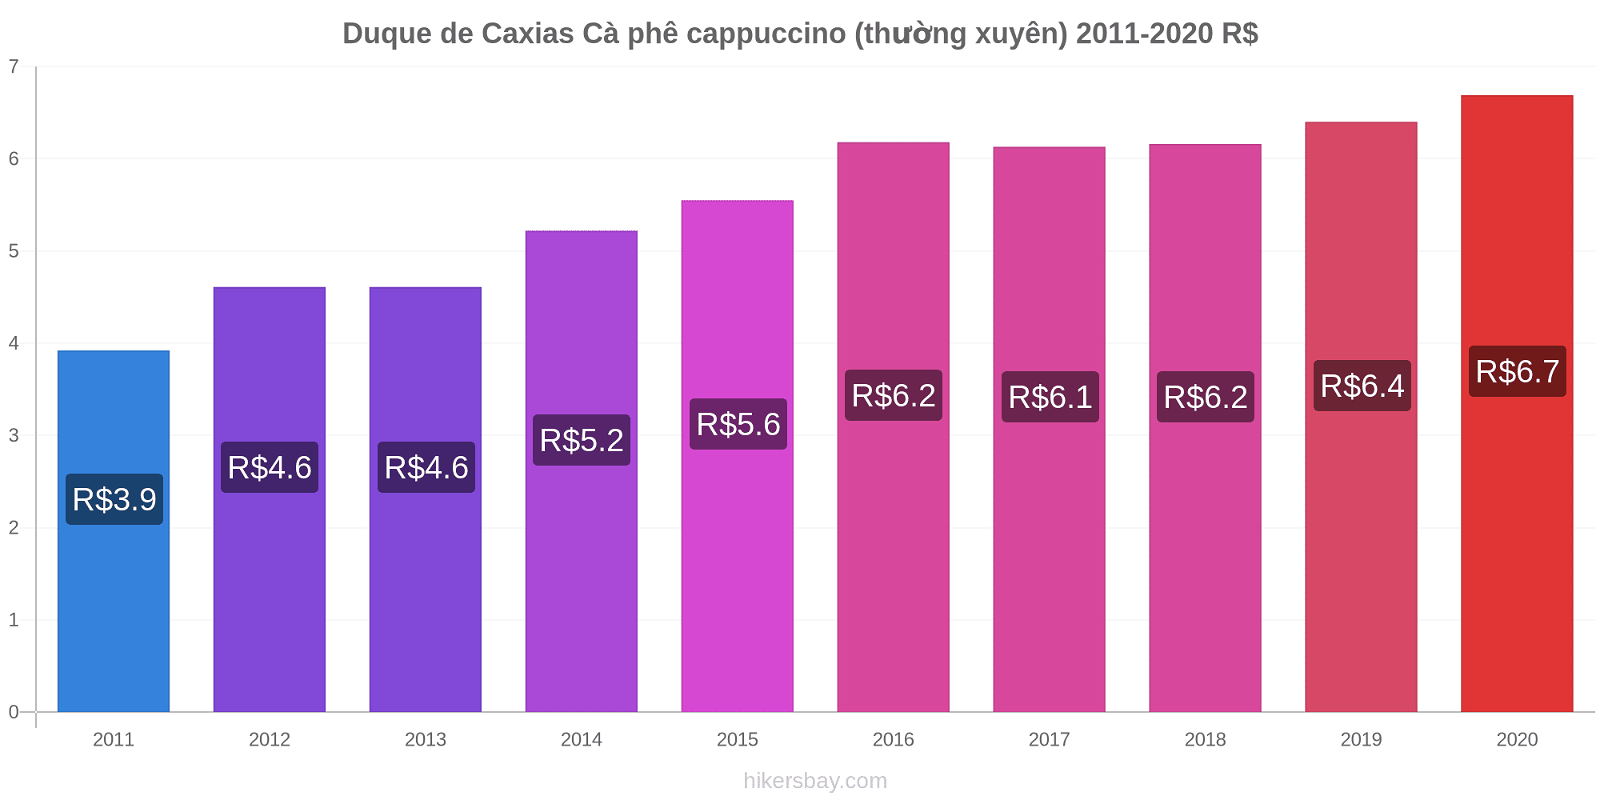 Duque de Caxias thay đổi giá Cà phê cappuccino (thường xuyên) hikersbay.com